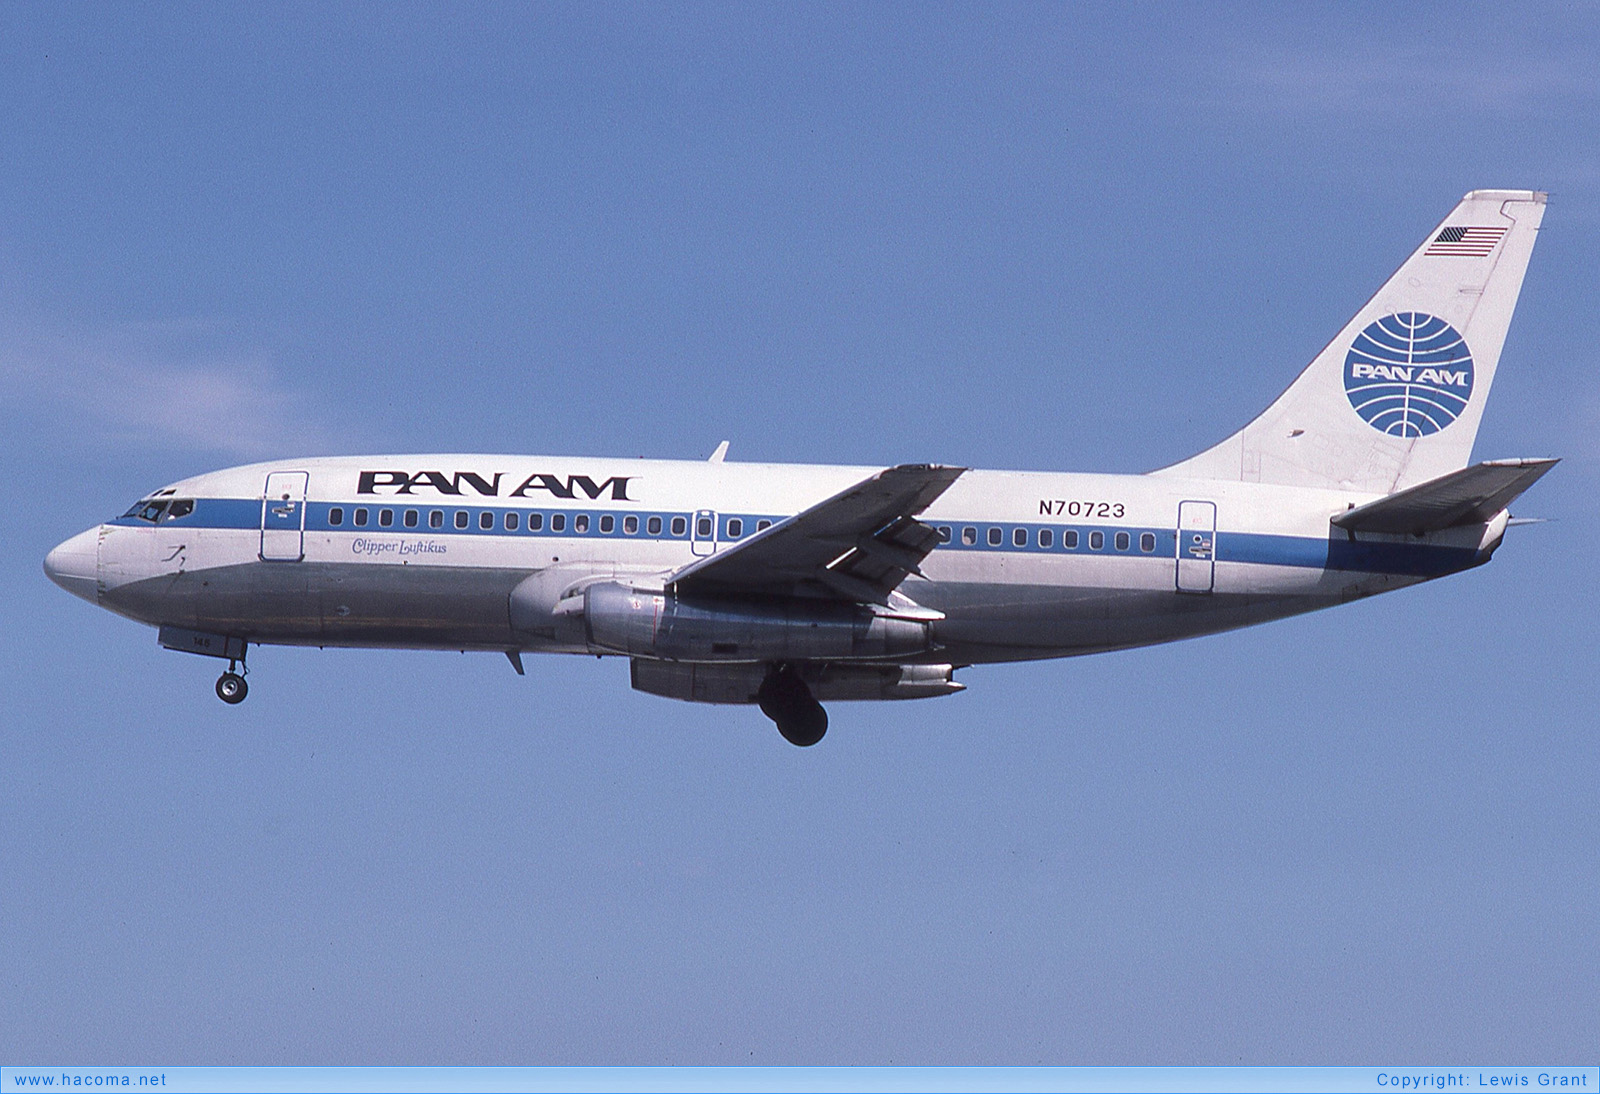 Foto von N70723 - Pan Am Clipper Luftikus / Dawn - Miami International Airport - 21.11.1987